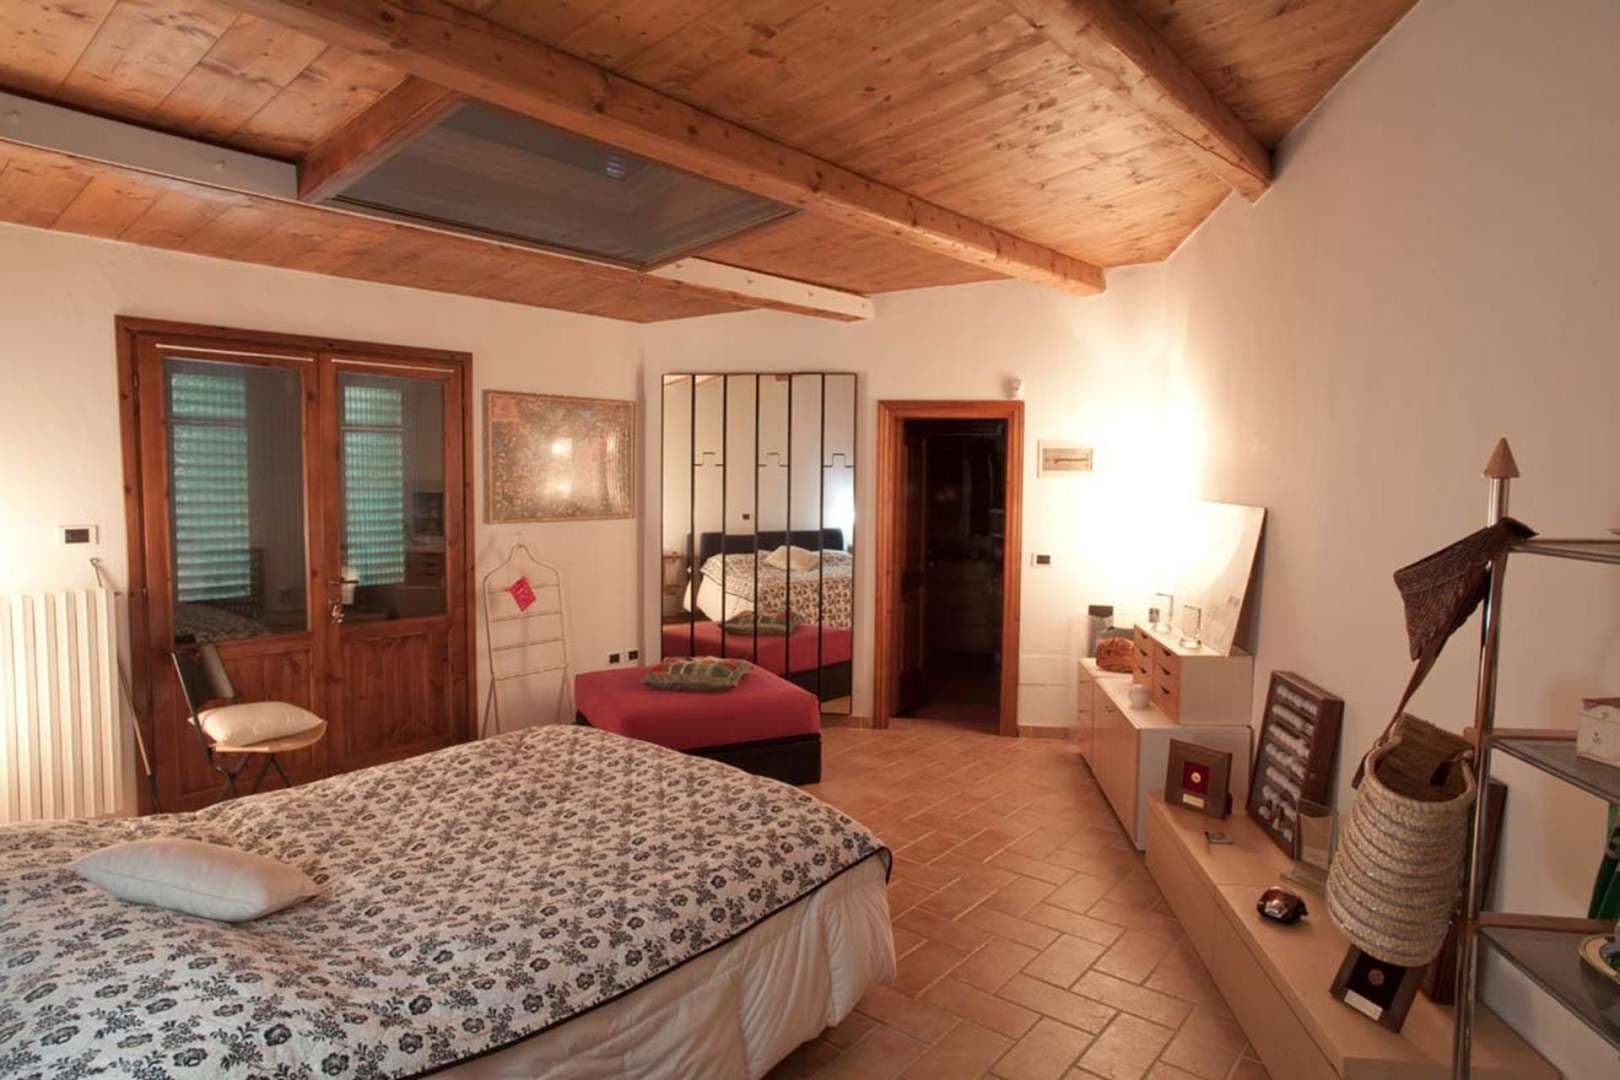 6 Bedroom Villa For Sale Villa Gelsomino Lp04996 2fa48274f28ab200.jpg